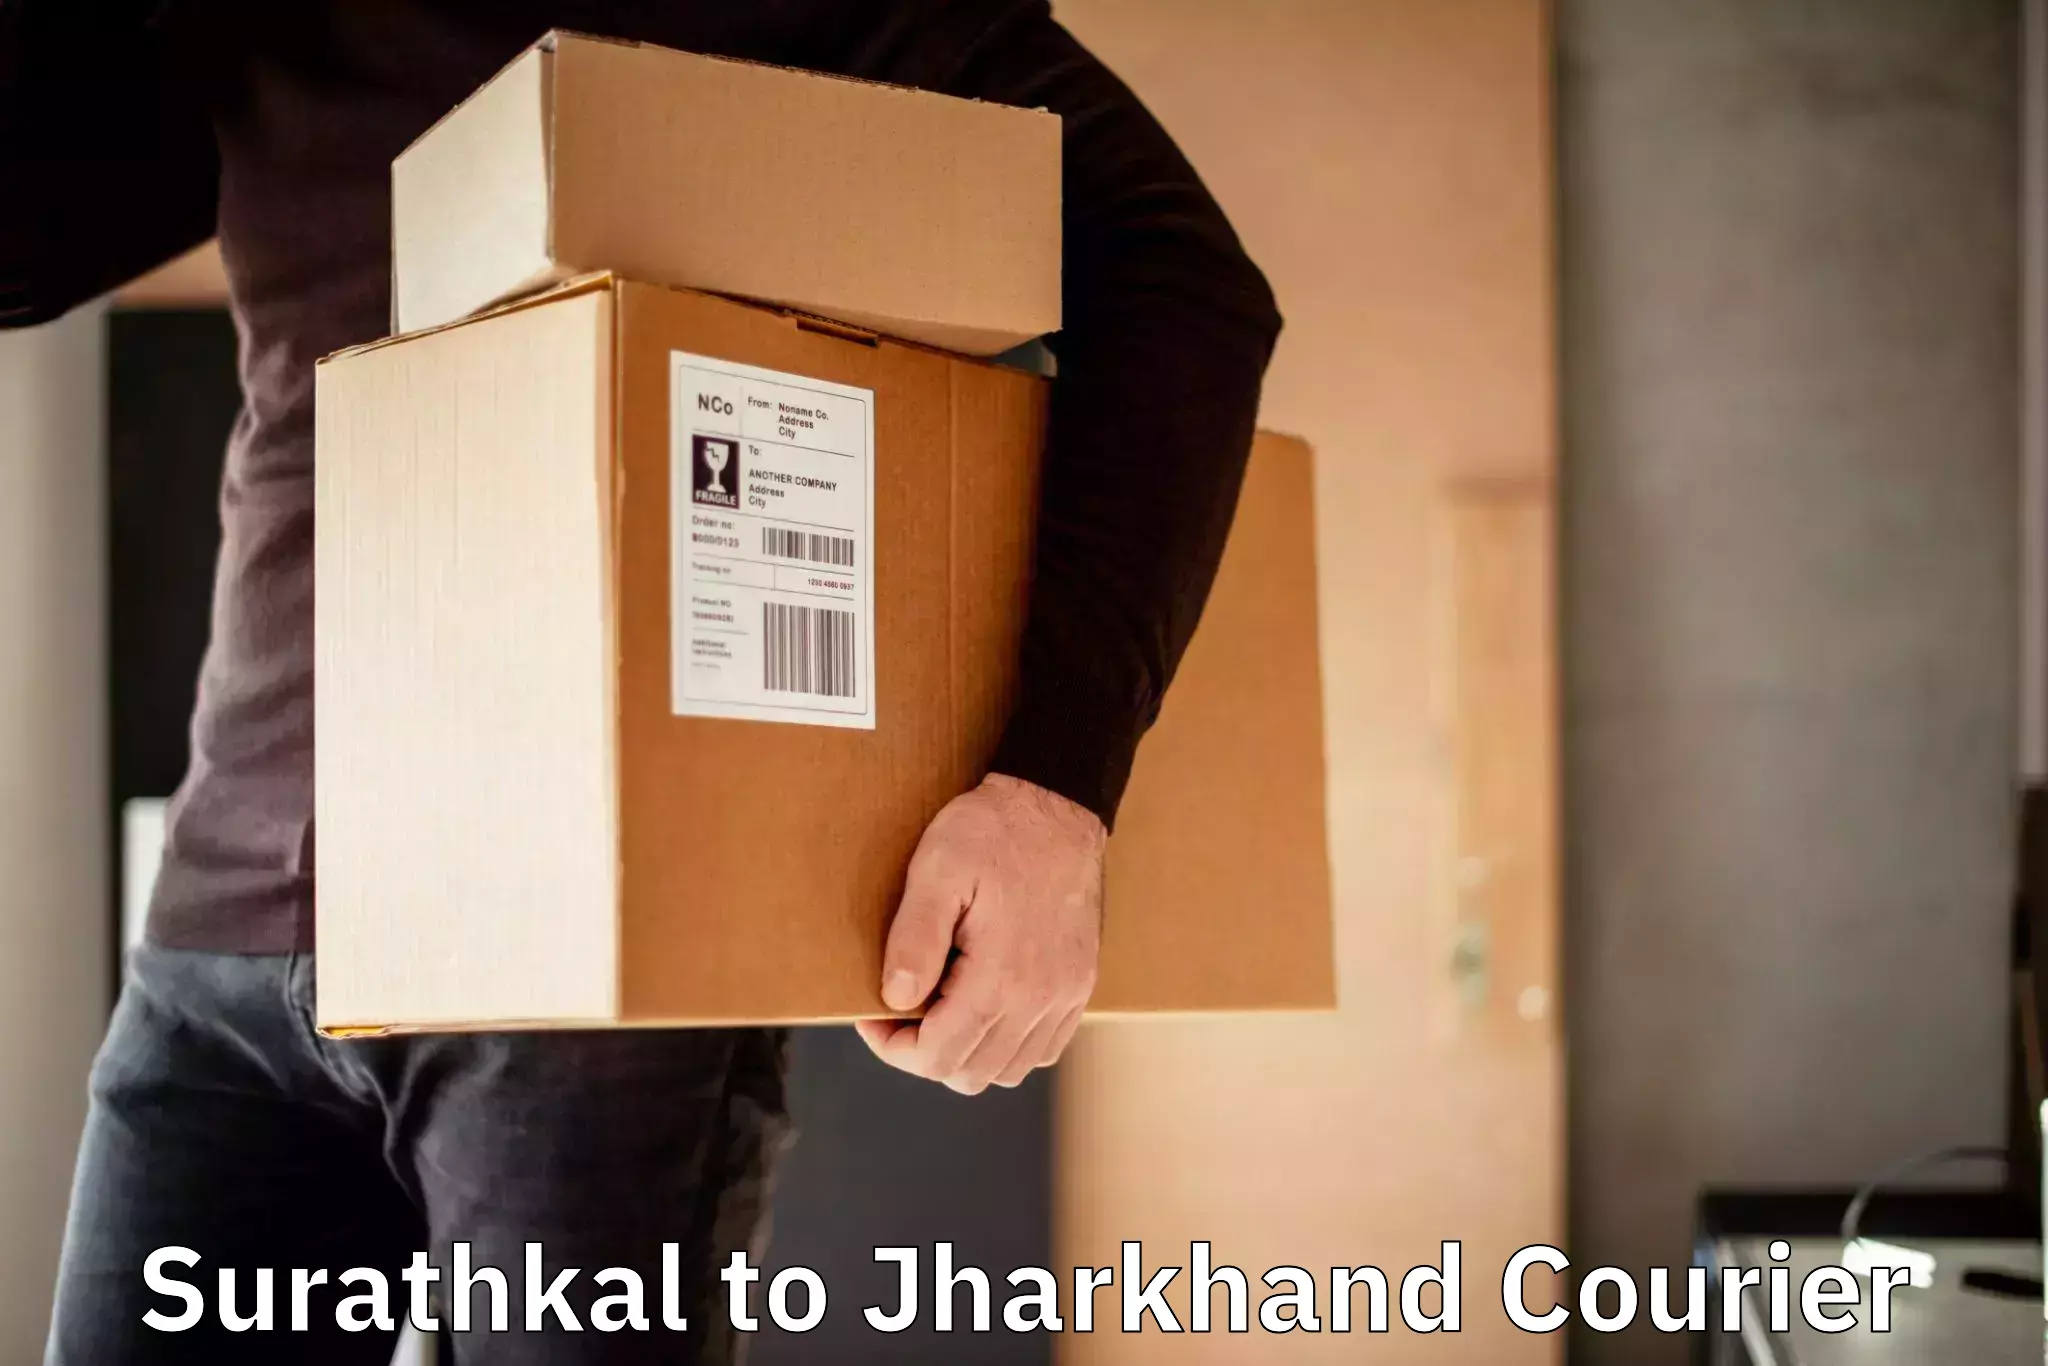 Doorstep delivery service Surathkal to Dhalbhumgarh